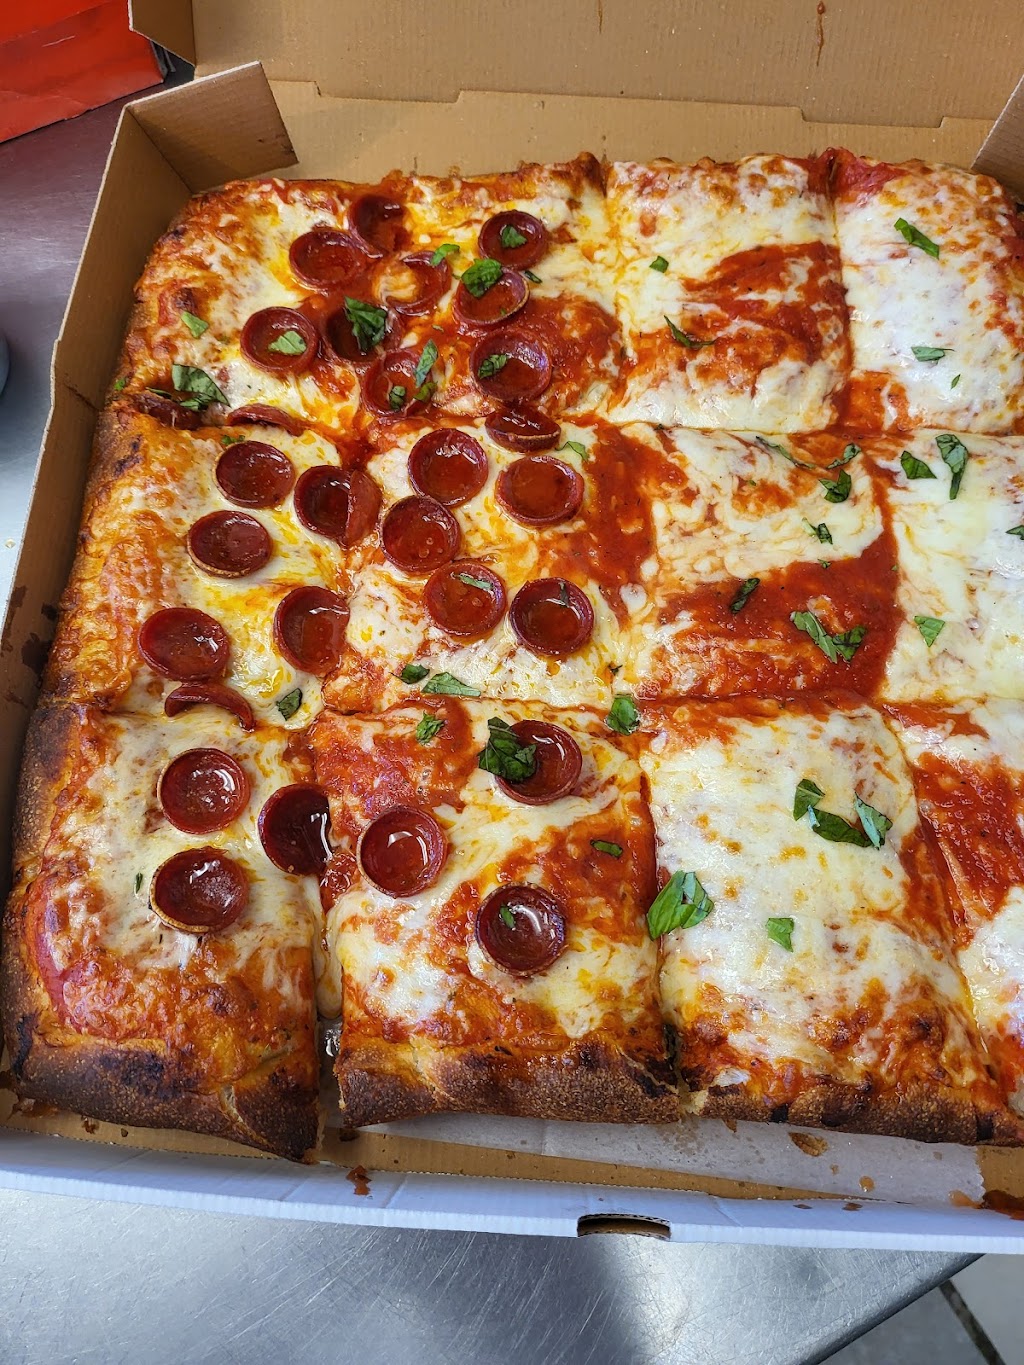 Italian Touch Pizza & Pasta | 1547 Arthur Kill Rd, Staten Island, NY 10312 | Phone: (718) 619-8669